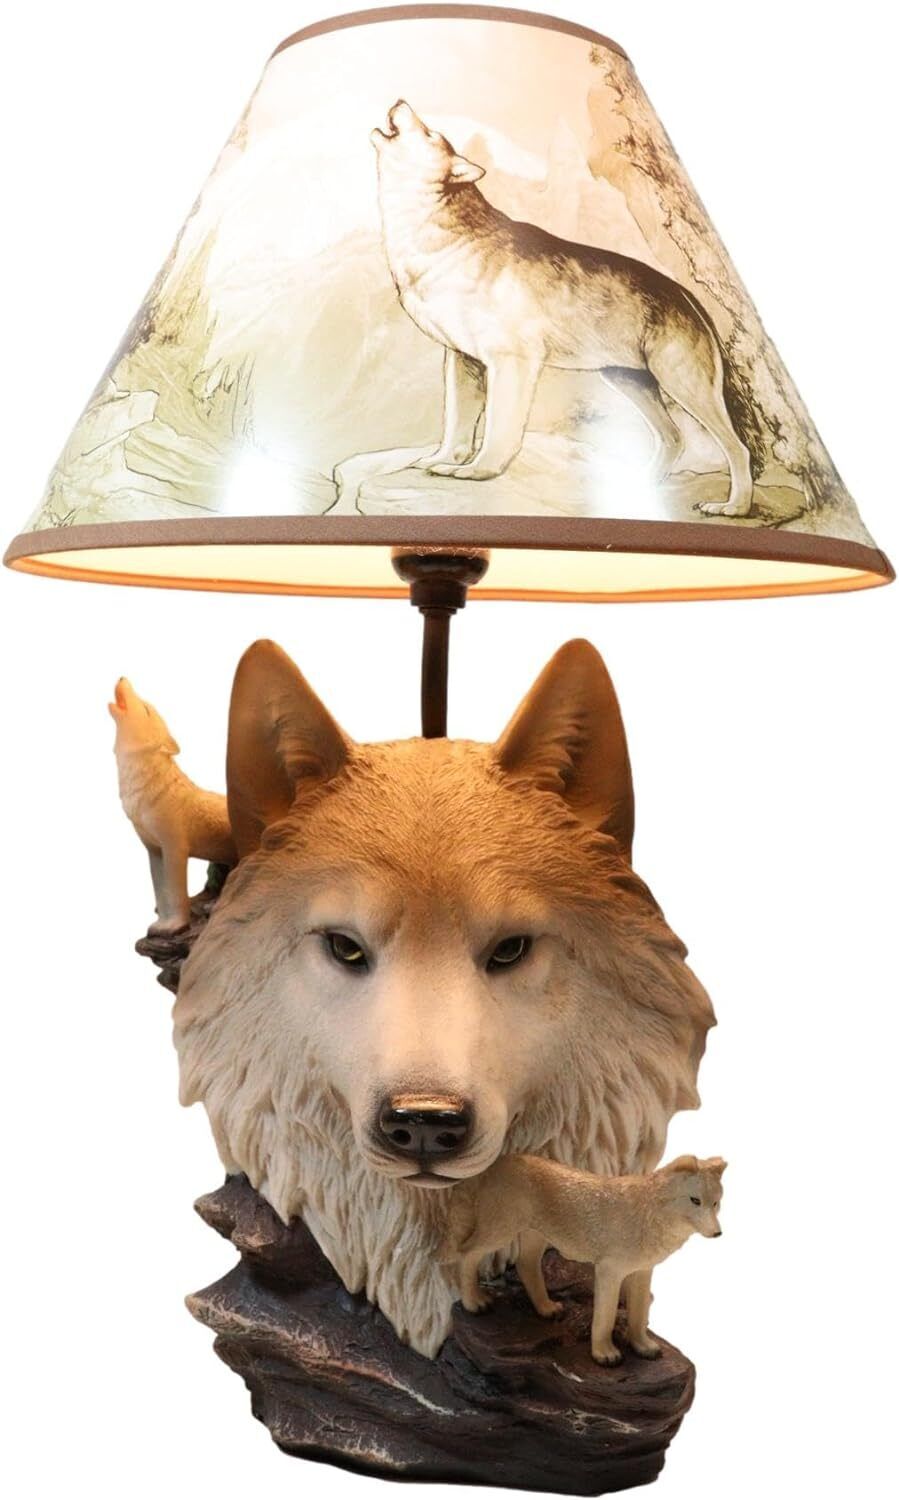 Howling Wolves On Rocks Sculptural Desktop Side Table Lamp